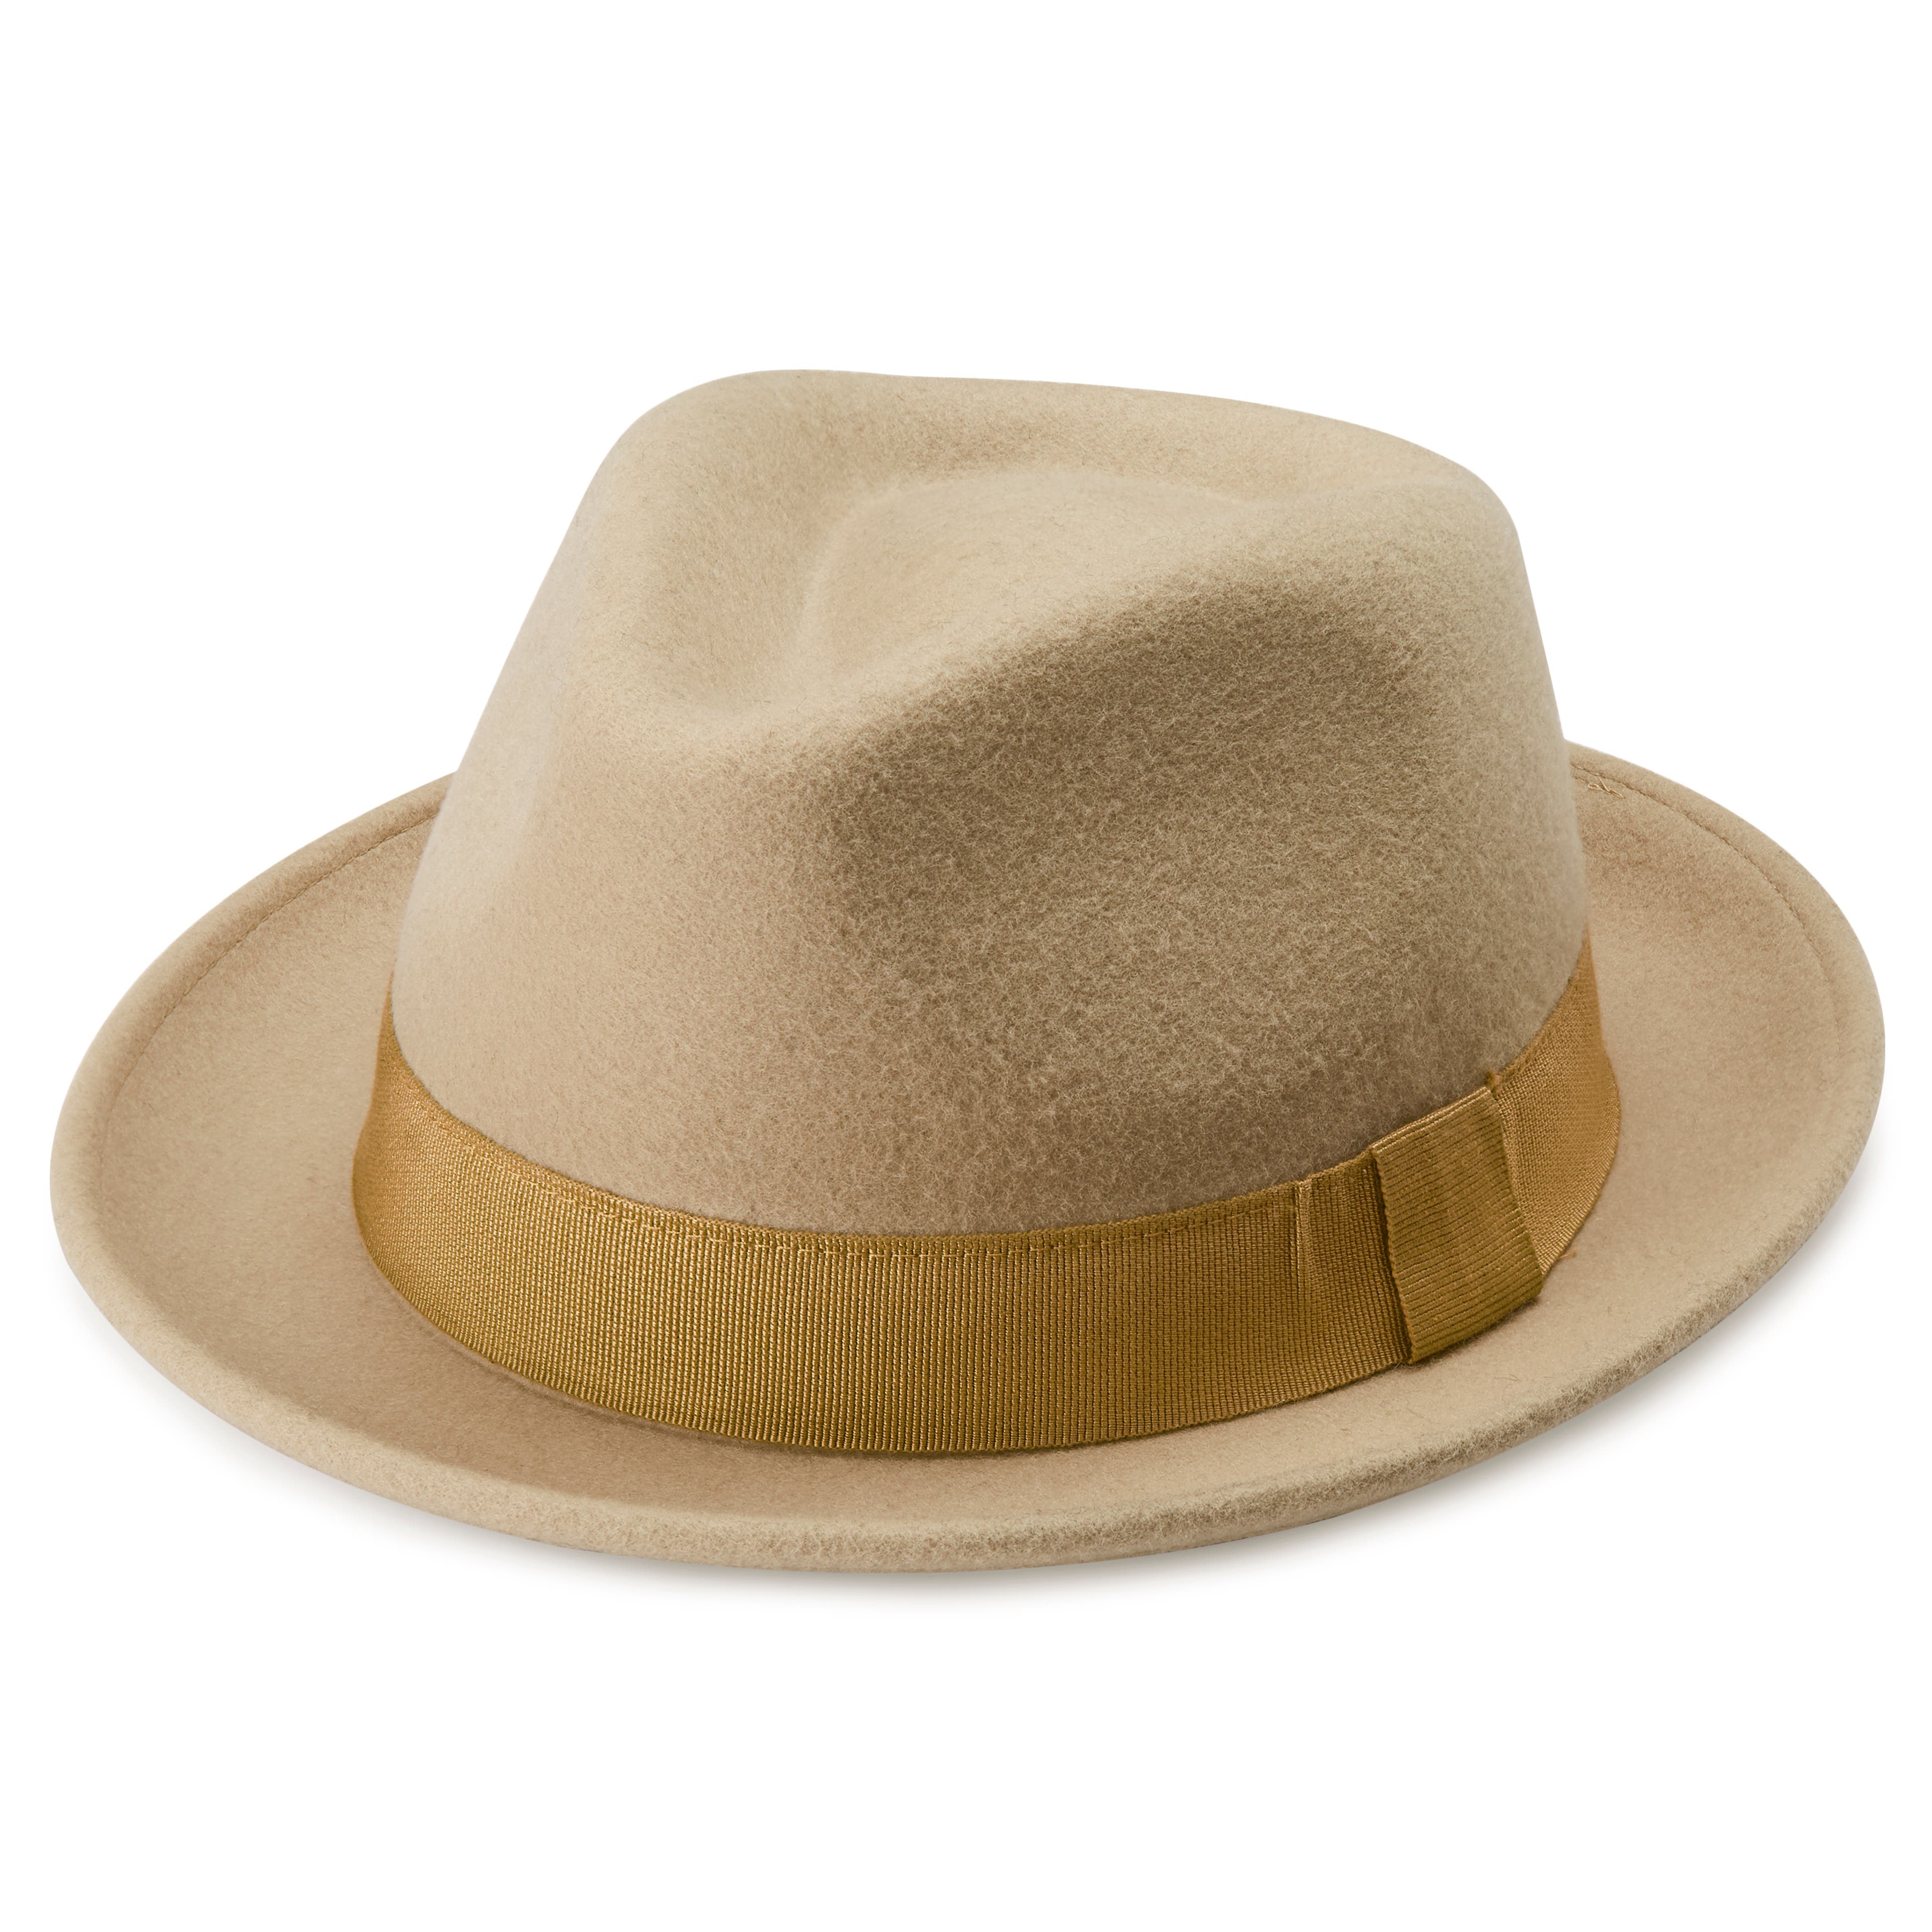 Las mejores ofertas en Sombreros formales para hombres, sombreros